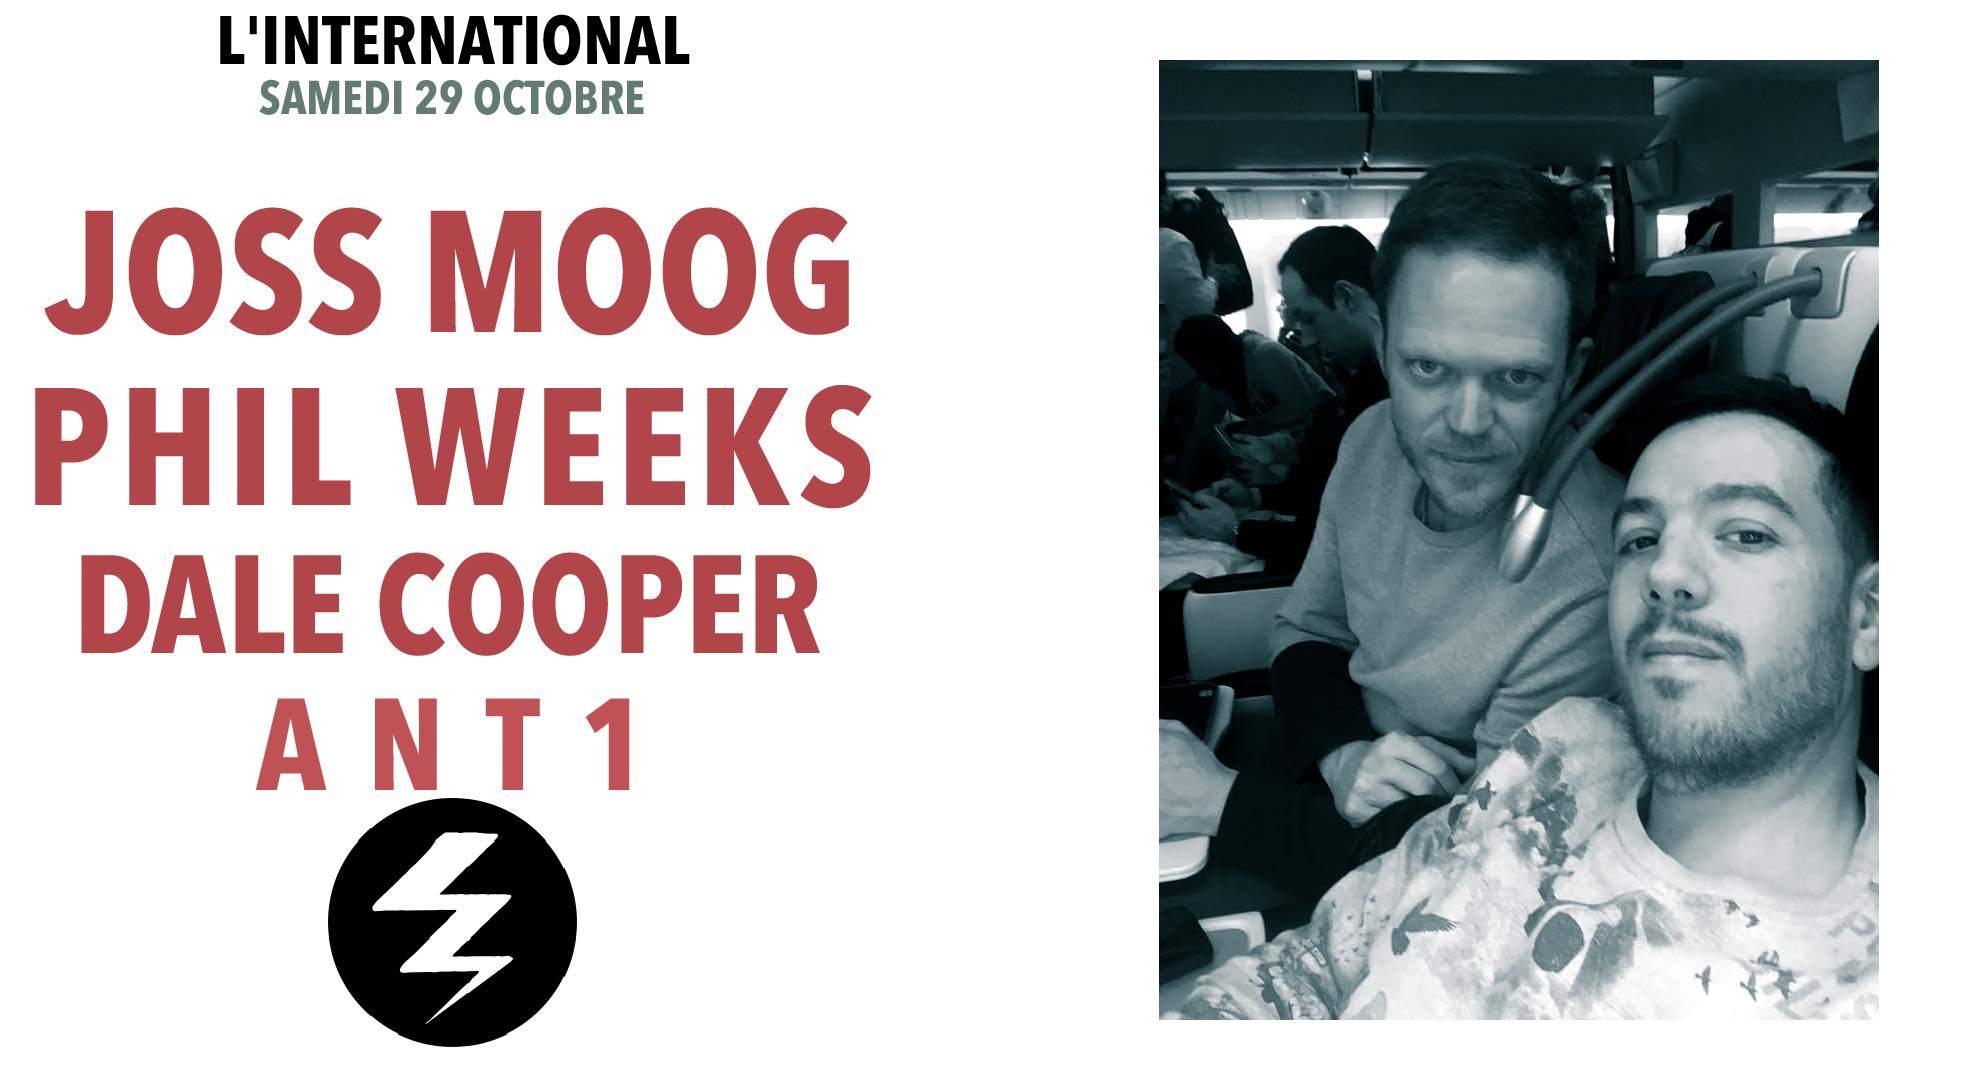 Phil Weeks Joss Moog DALE COOPER Ant1 - Página frontal